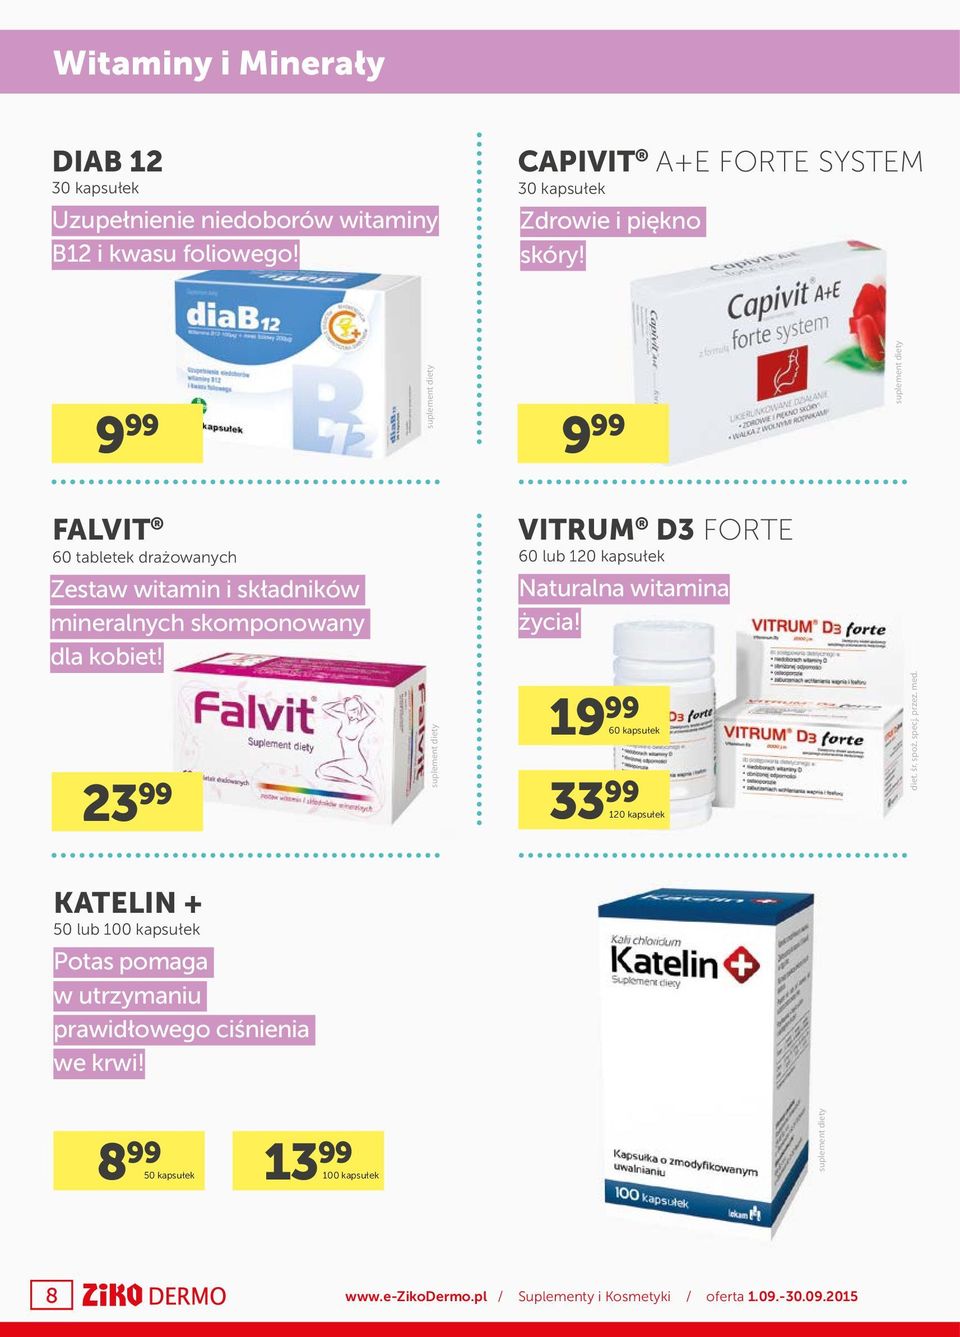 9 99 9 99 FALVIT 60 tabletek drażowanych VITRUM D3 FORTE 60 lub 120 kapsułek Zestaw witamin i składników mineralnych skomponowany dla kobiet!